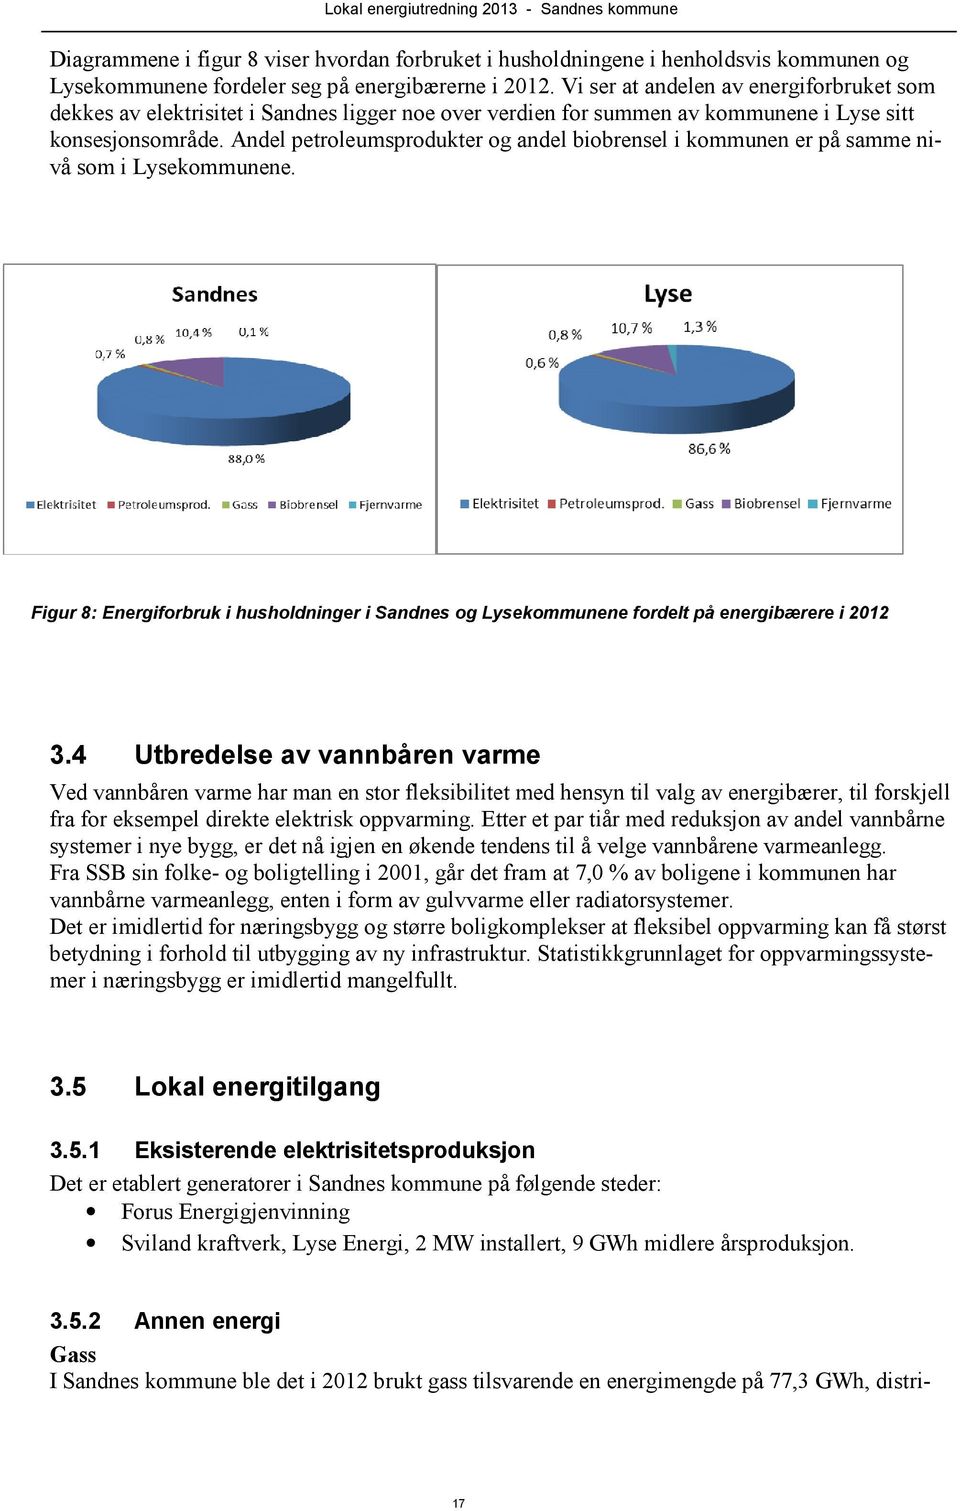 Andel petroleumsprodukter og andel biobrensel i kommunen er på samme nivå som i Lysekommunene. Figur 8: Energiforbruk i husholdninger i Sandnes og Lysekommunene fordelt på energibærere i 2012 3.